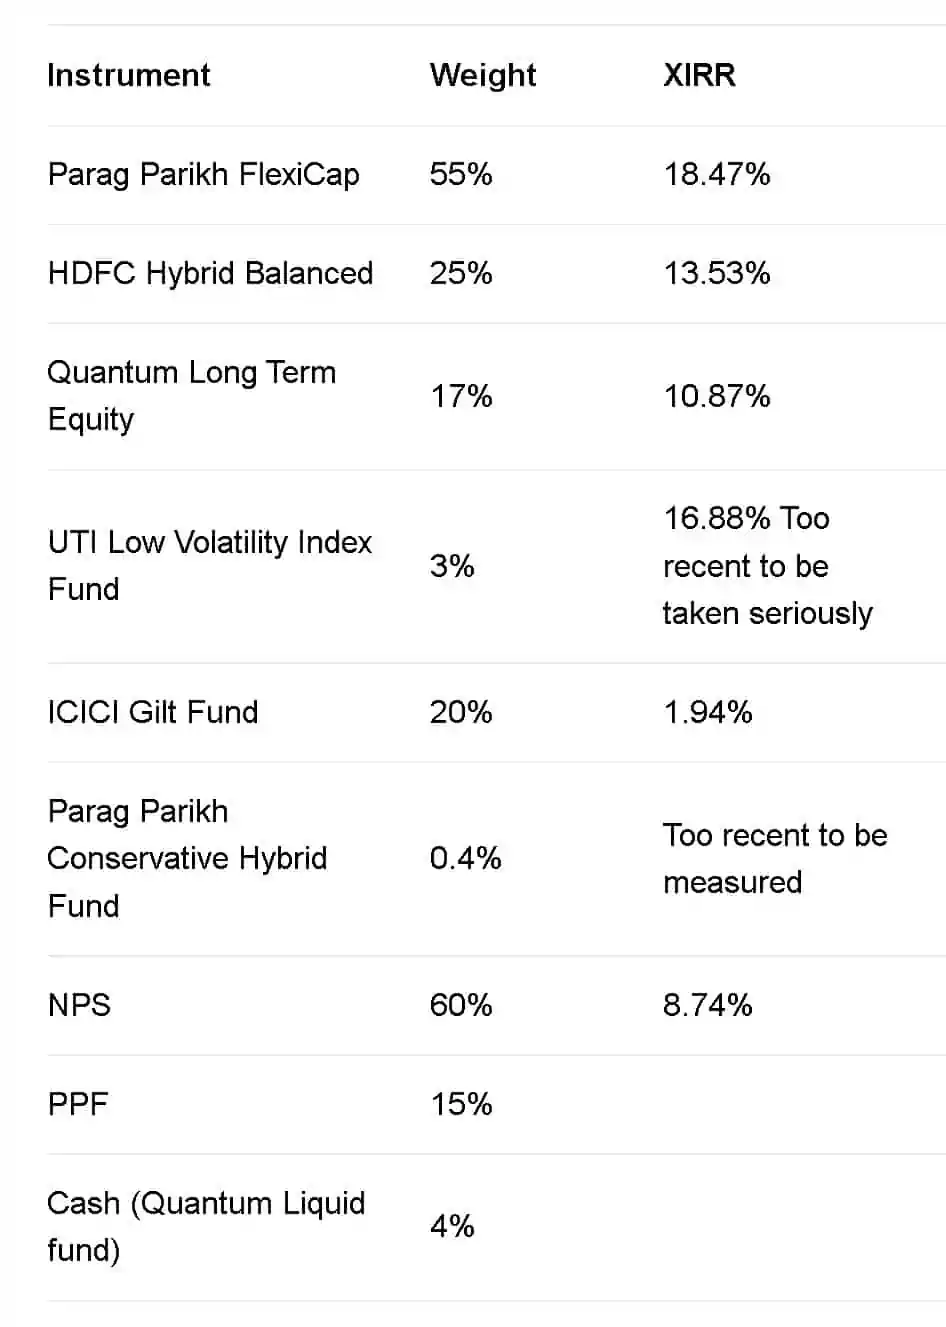 Snapshot of fund and instrument weights in my retirement portfolio